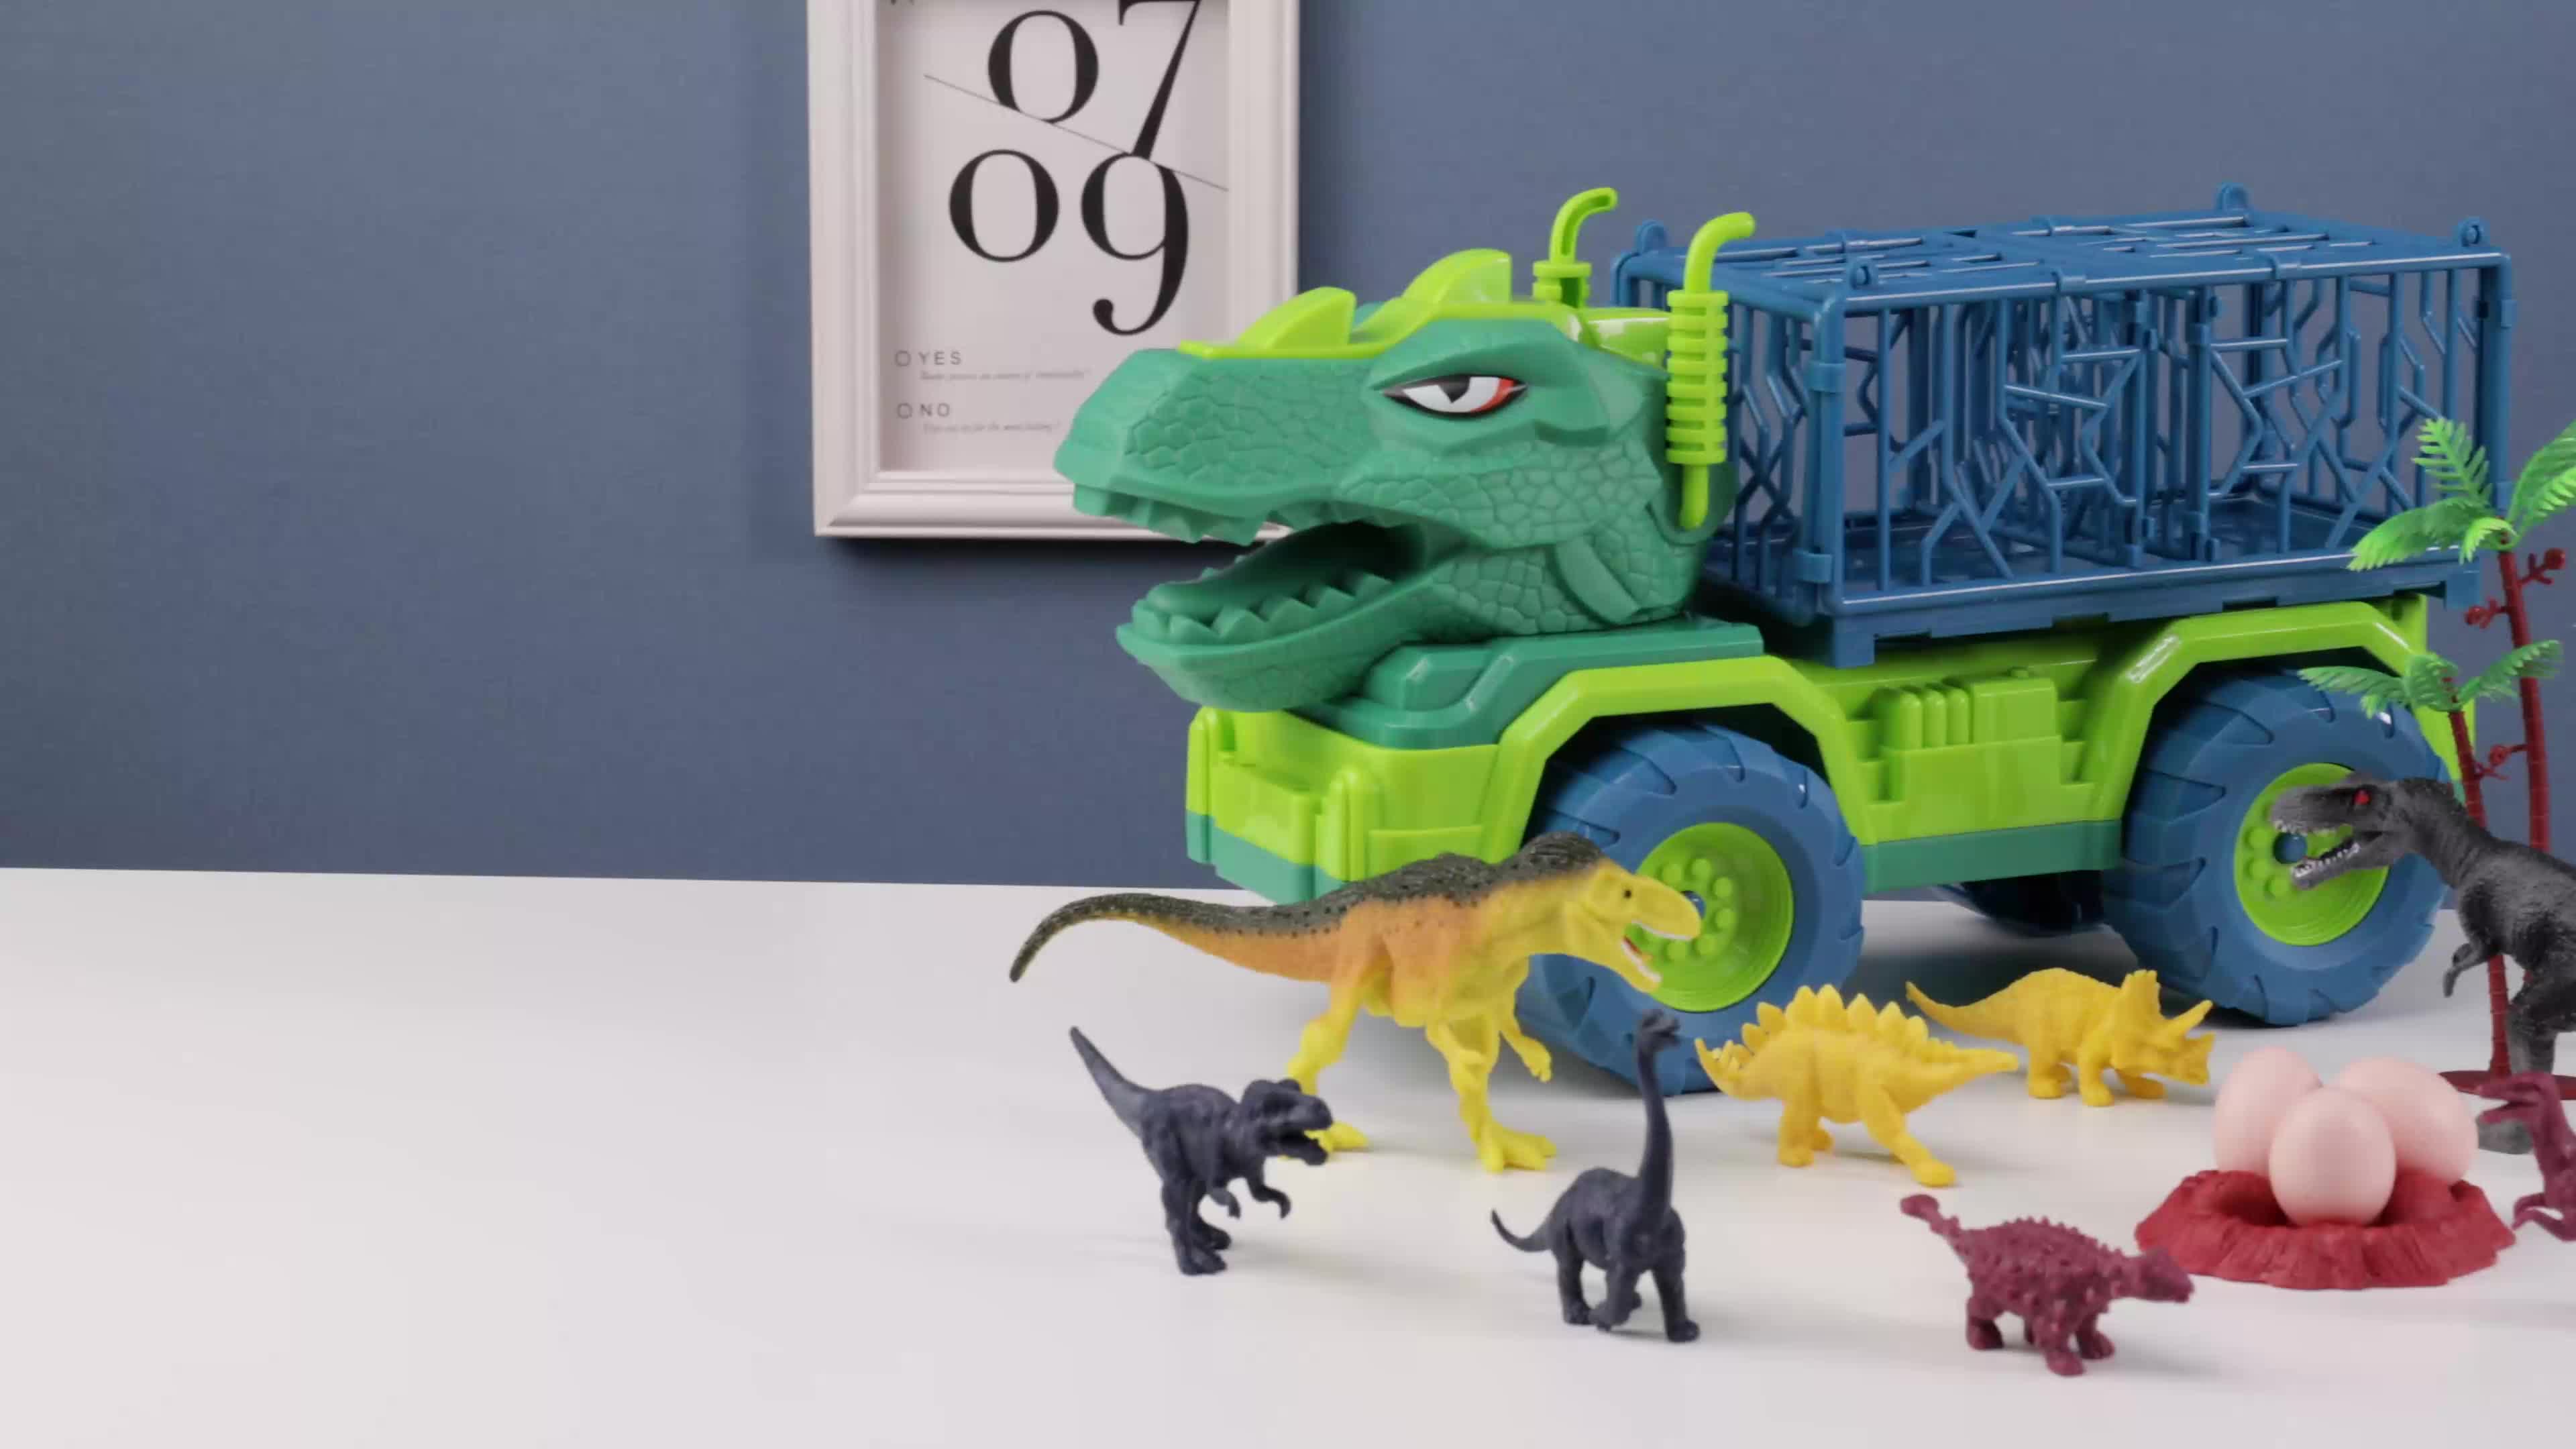 ALEENFOON Camion de Transporteur Dinosaure Jouet pour Enfant 3 4 5 6 Ans,  Jouet Triceratops 6 Pcs Figurines de Dinosaures Ani